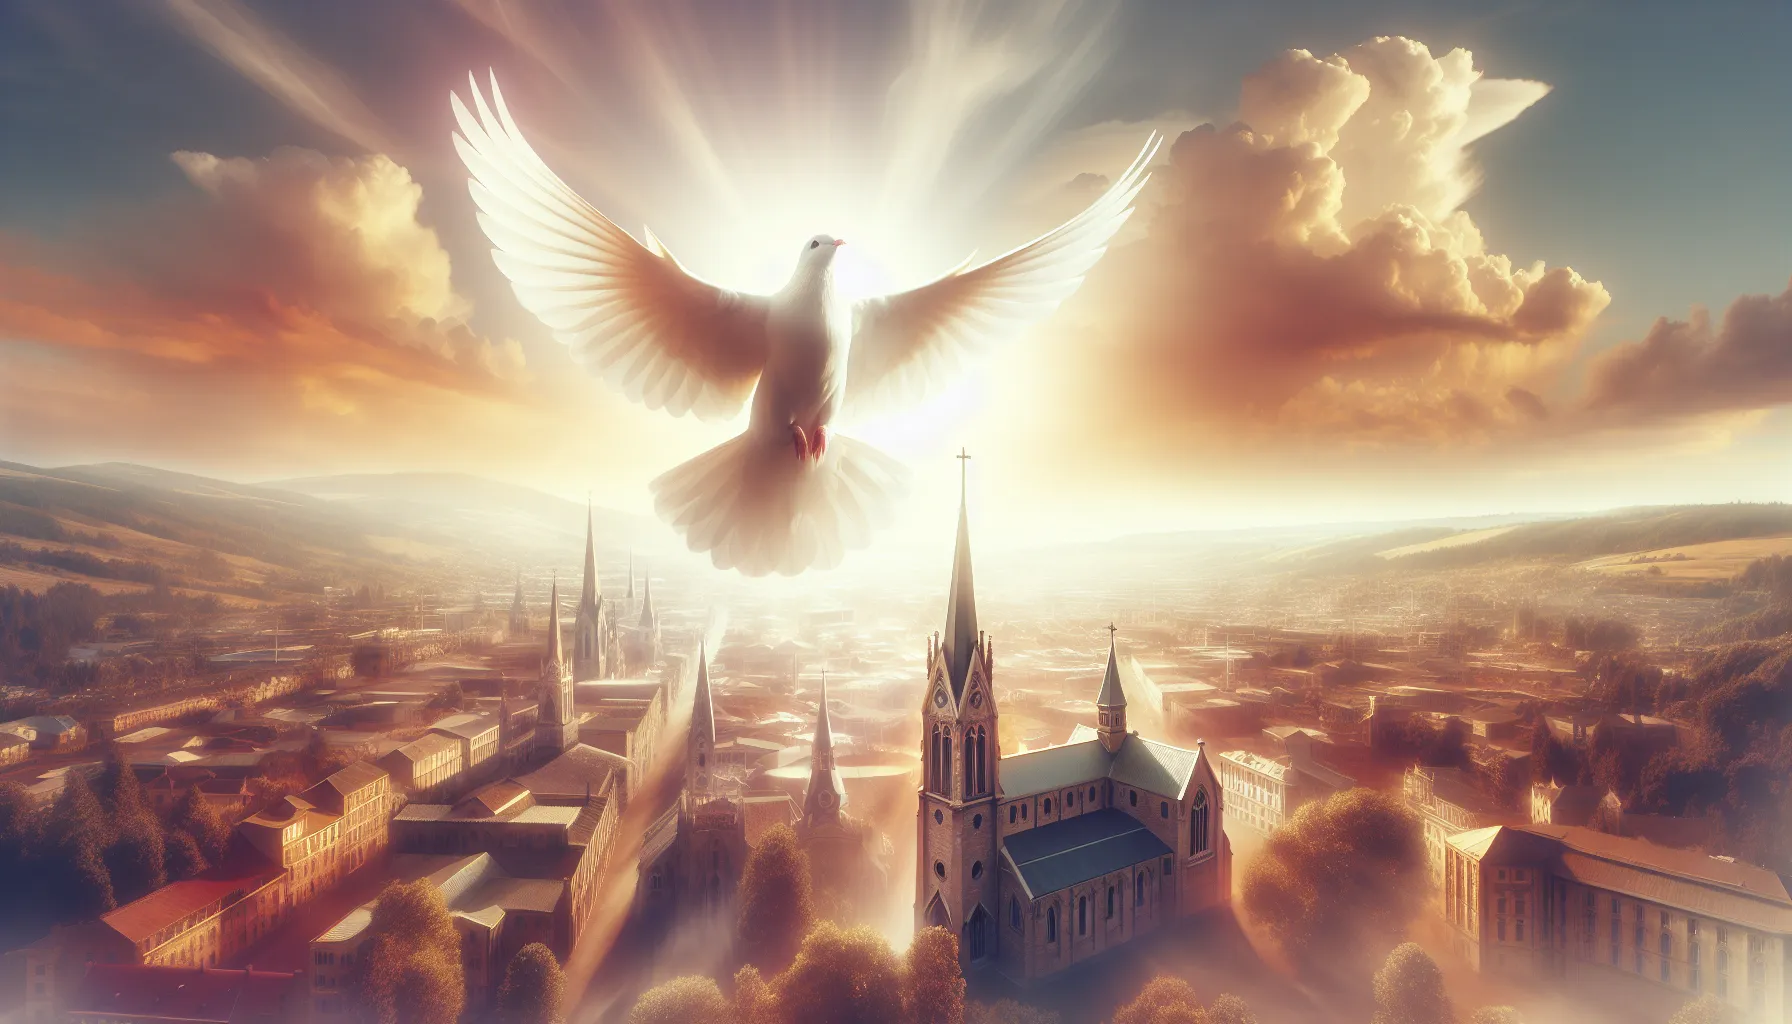 Representación simbólica del Espíritu Santo en forma de paloma